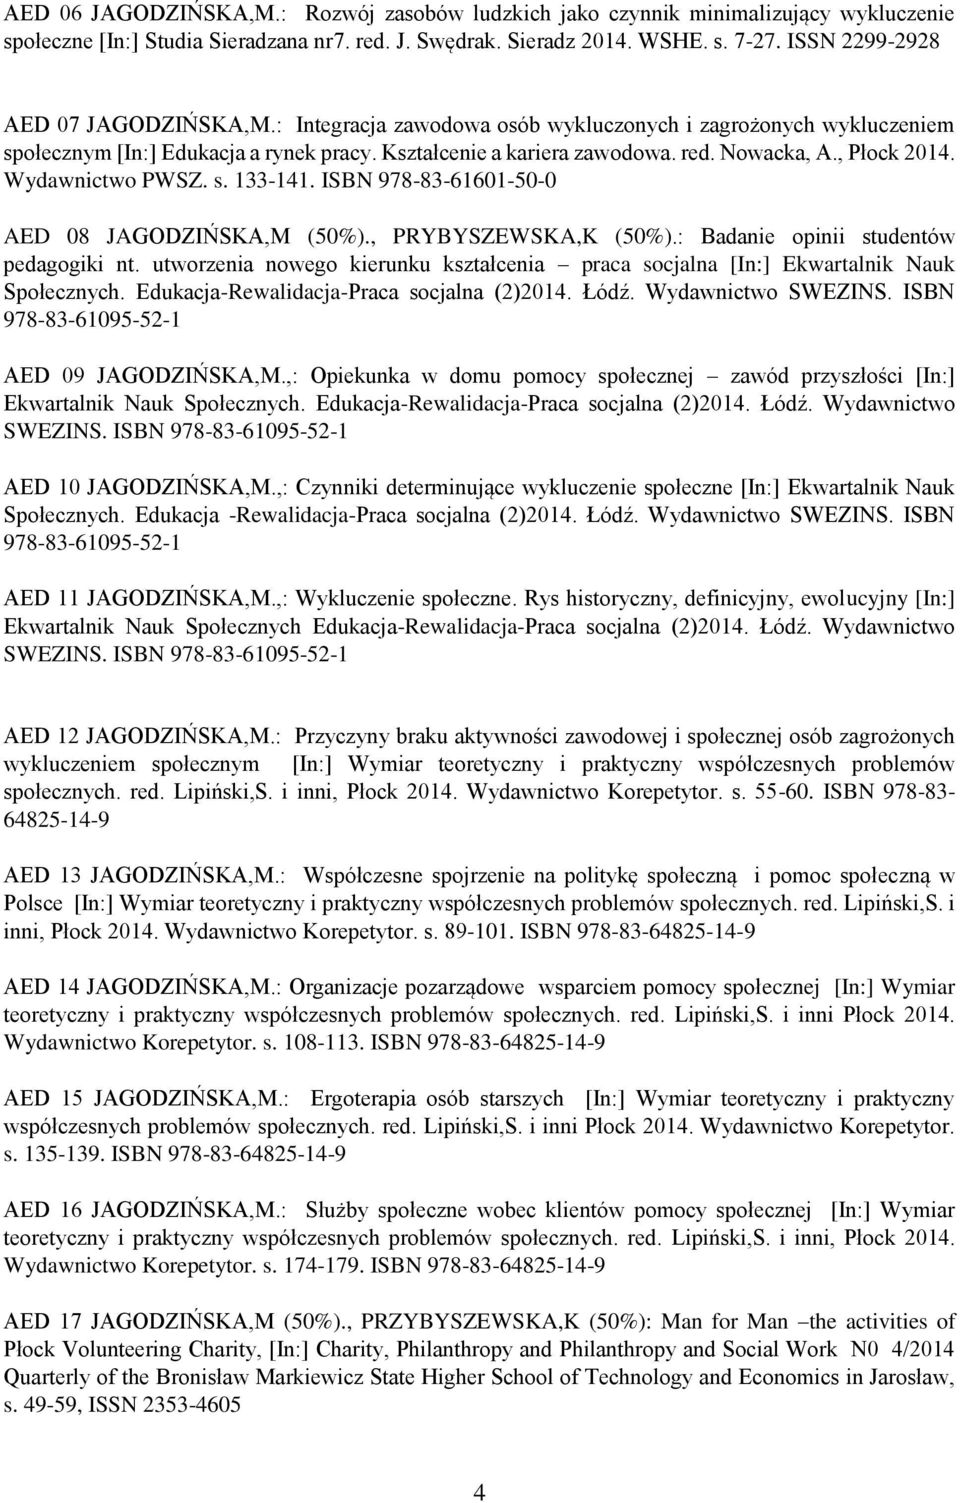 , Płock 2014. Wydawnictwo PWSZ. s. 133-141. ISBN 978-83-61601-50-0 AED 08 JAGODZIŃSKA,M (50%)., PRYBYSZEWSKA,K (50%).: Badanie opinii studentów pedagogiki nt.